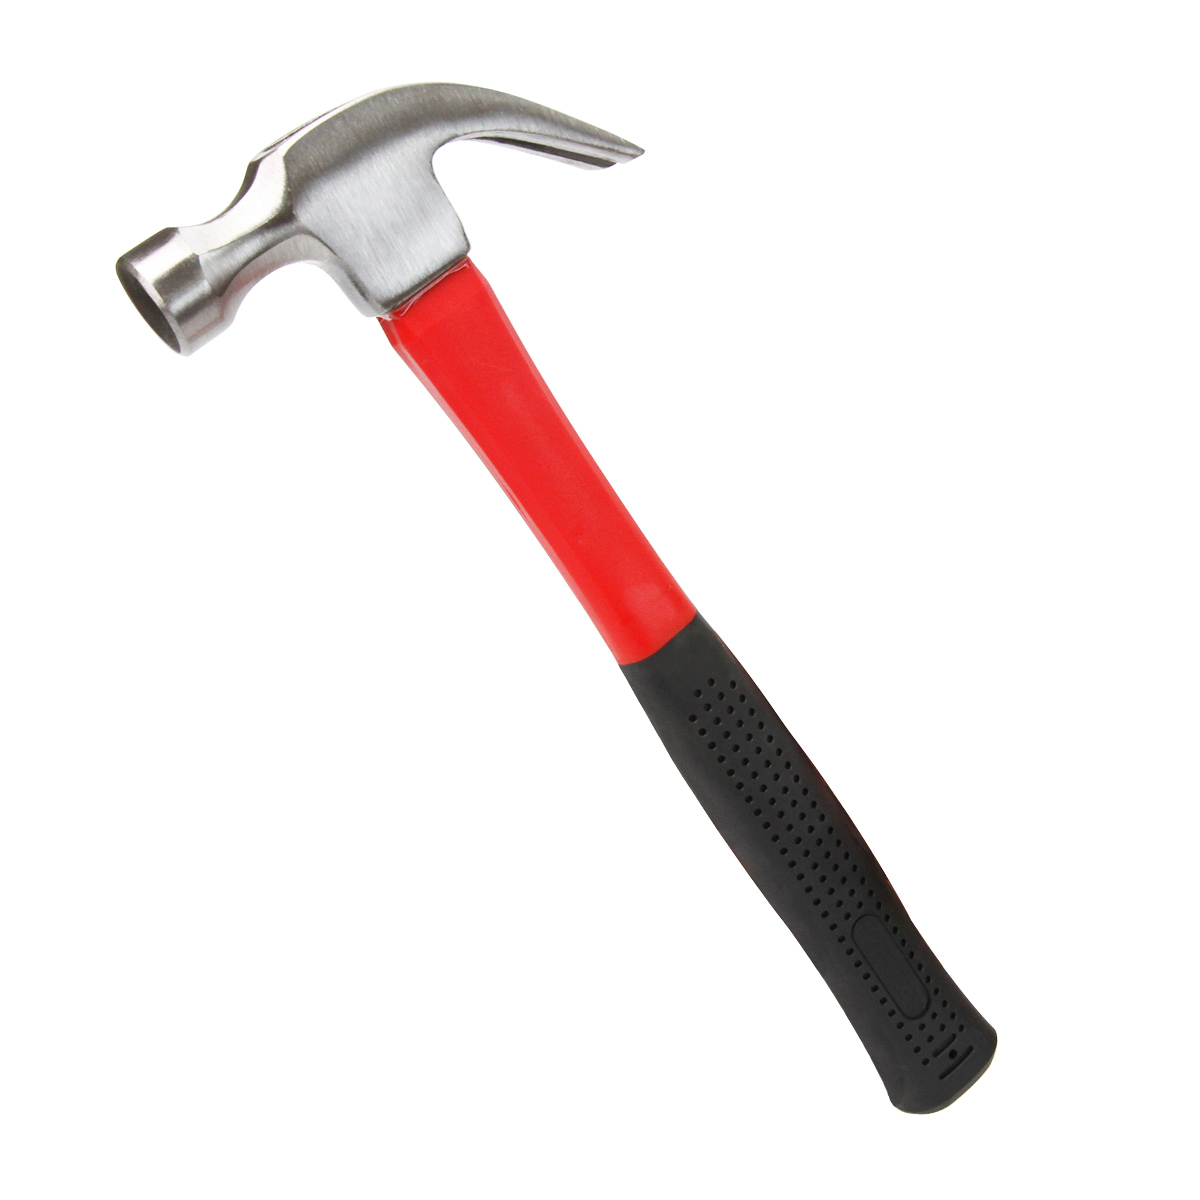 16-oz Claw Hammer